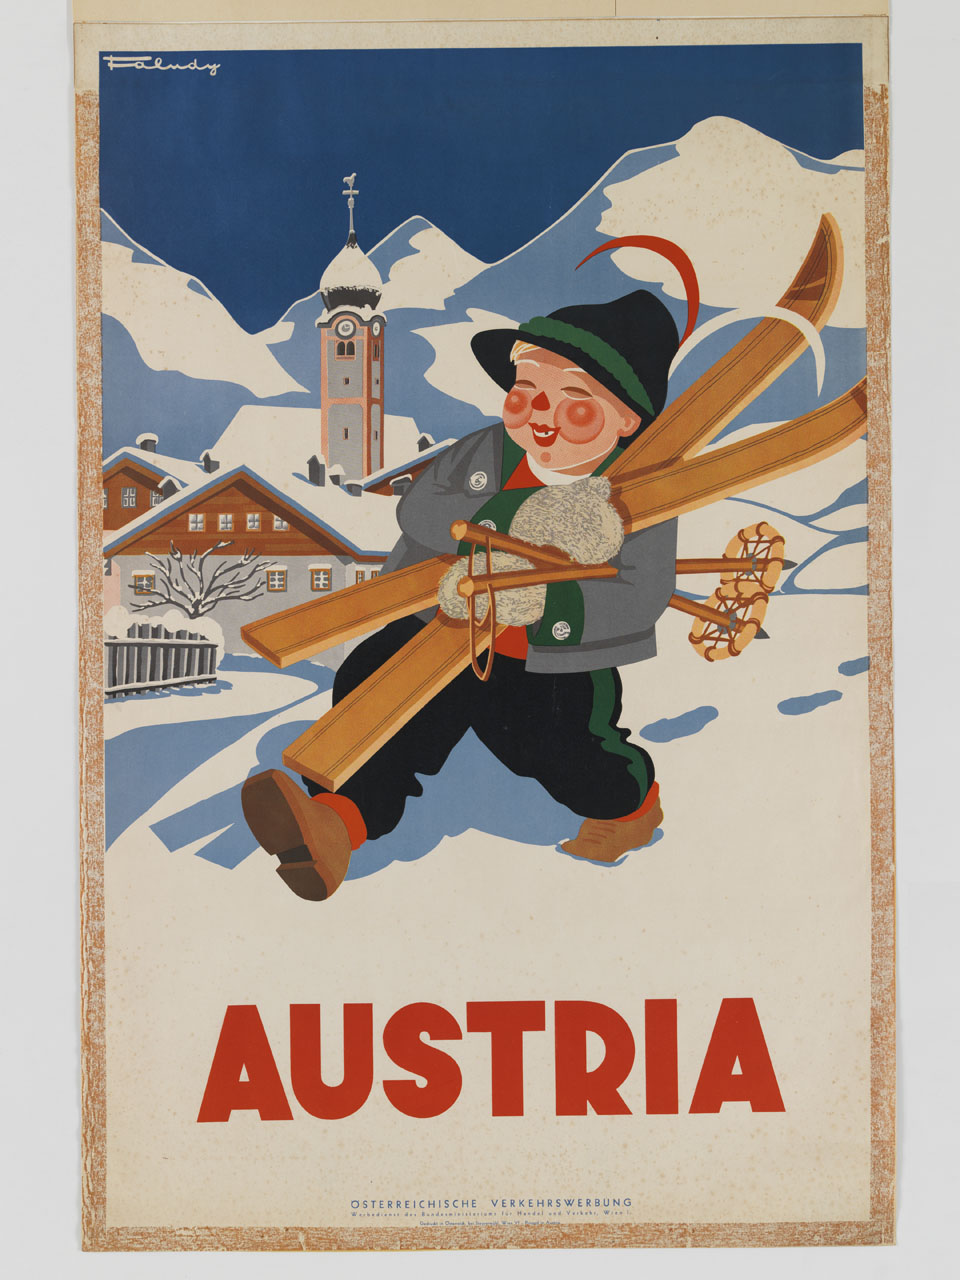 bambino cammina sulla neve con sci tra le braccia sullo sfondo di un paese alpino (manifesto) di Faludy (sec. XX)